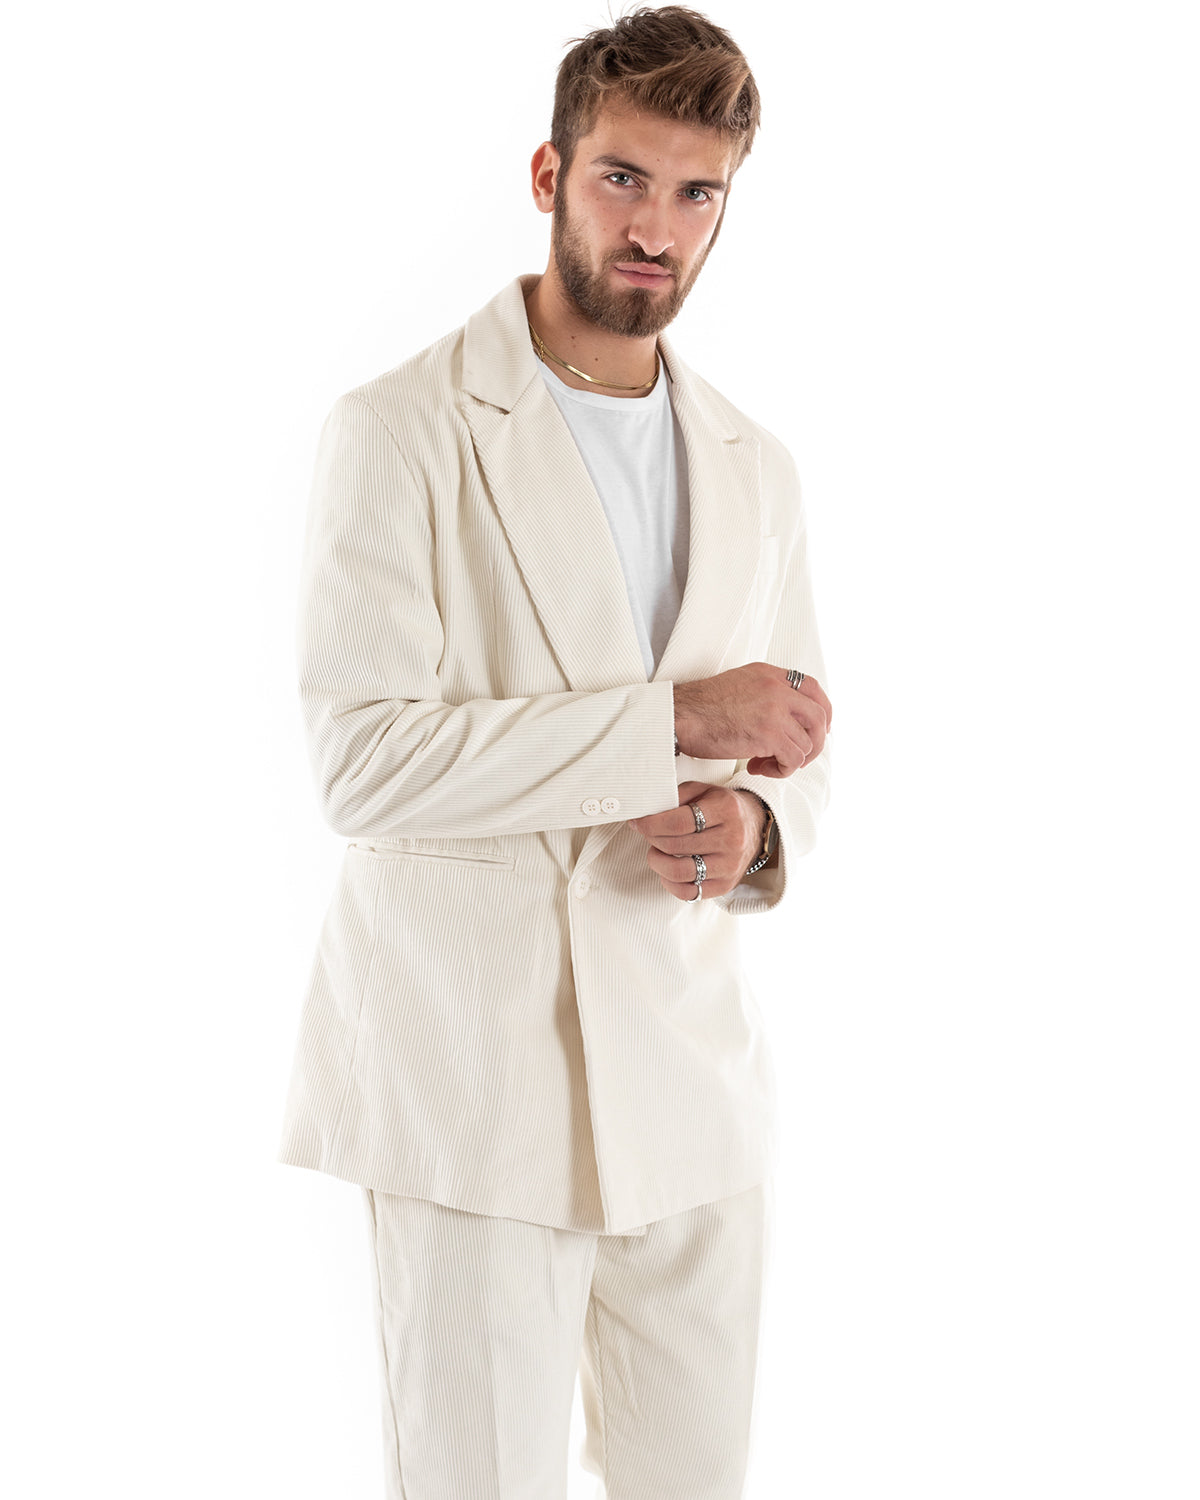 Double-Breasted Men's Suit Velvet Suit Suit Jacket Pants Cream Elegant Ceremony GIOSAL-OU2194A